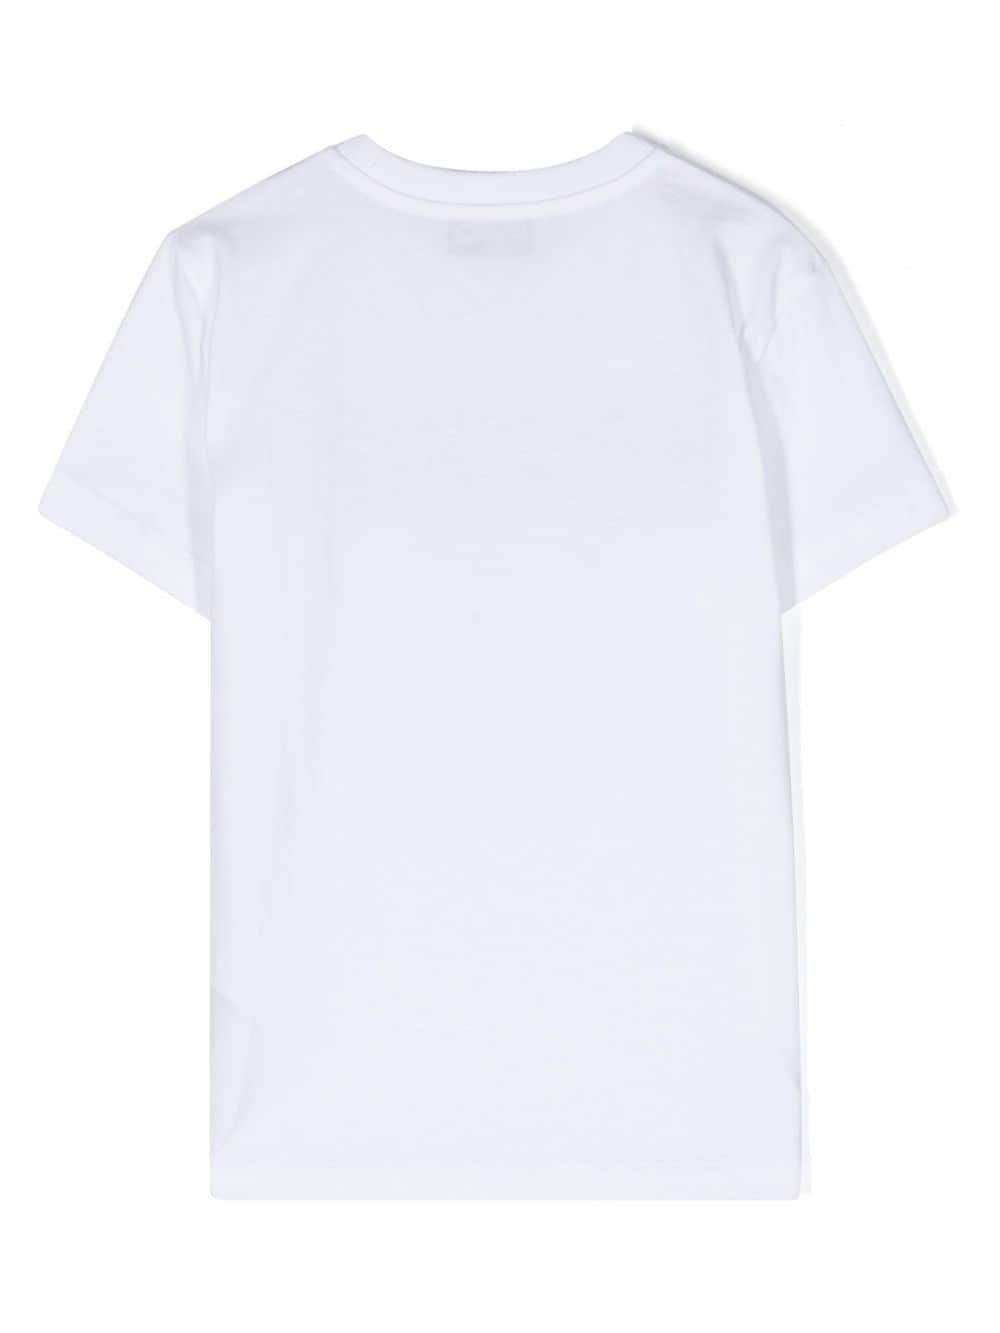 T-shirt bianco bambino